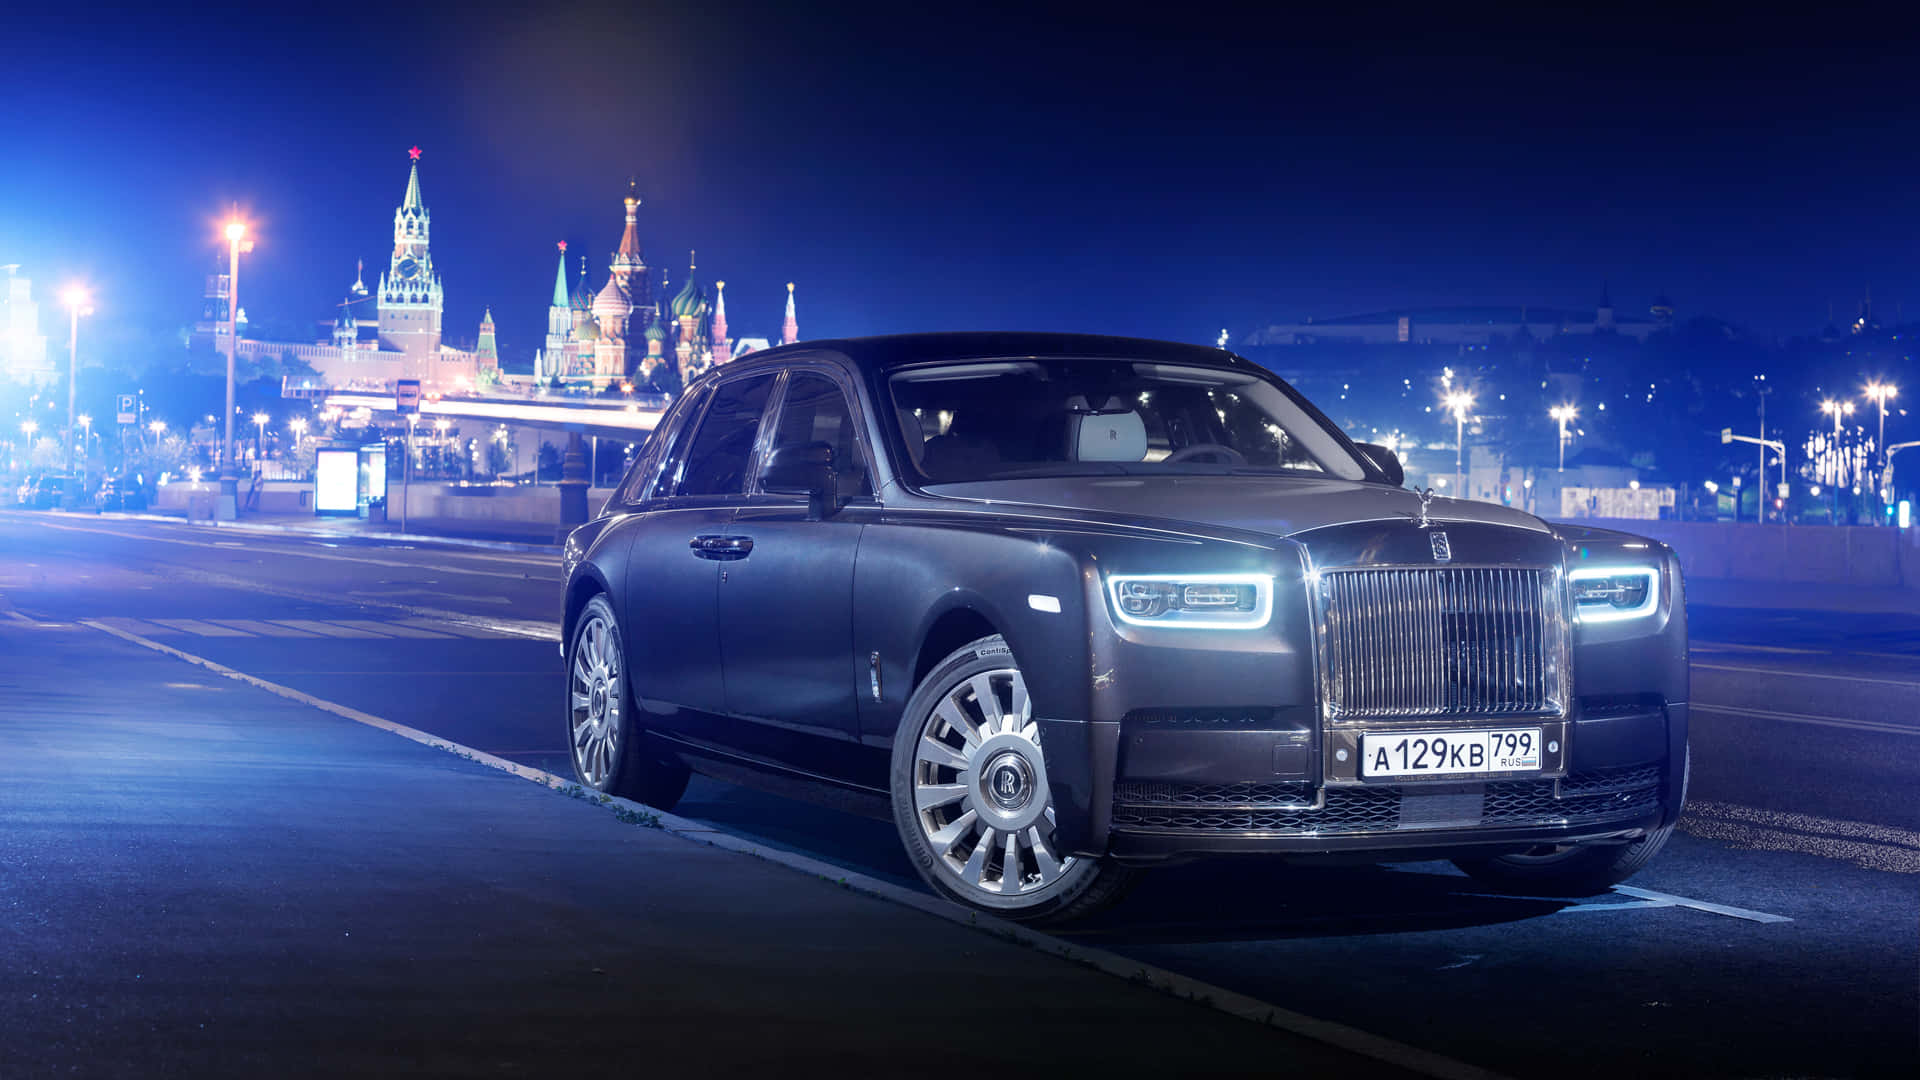 Luxurious Rolls-Royce Sedan in Opulent Setting